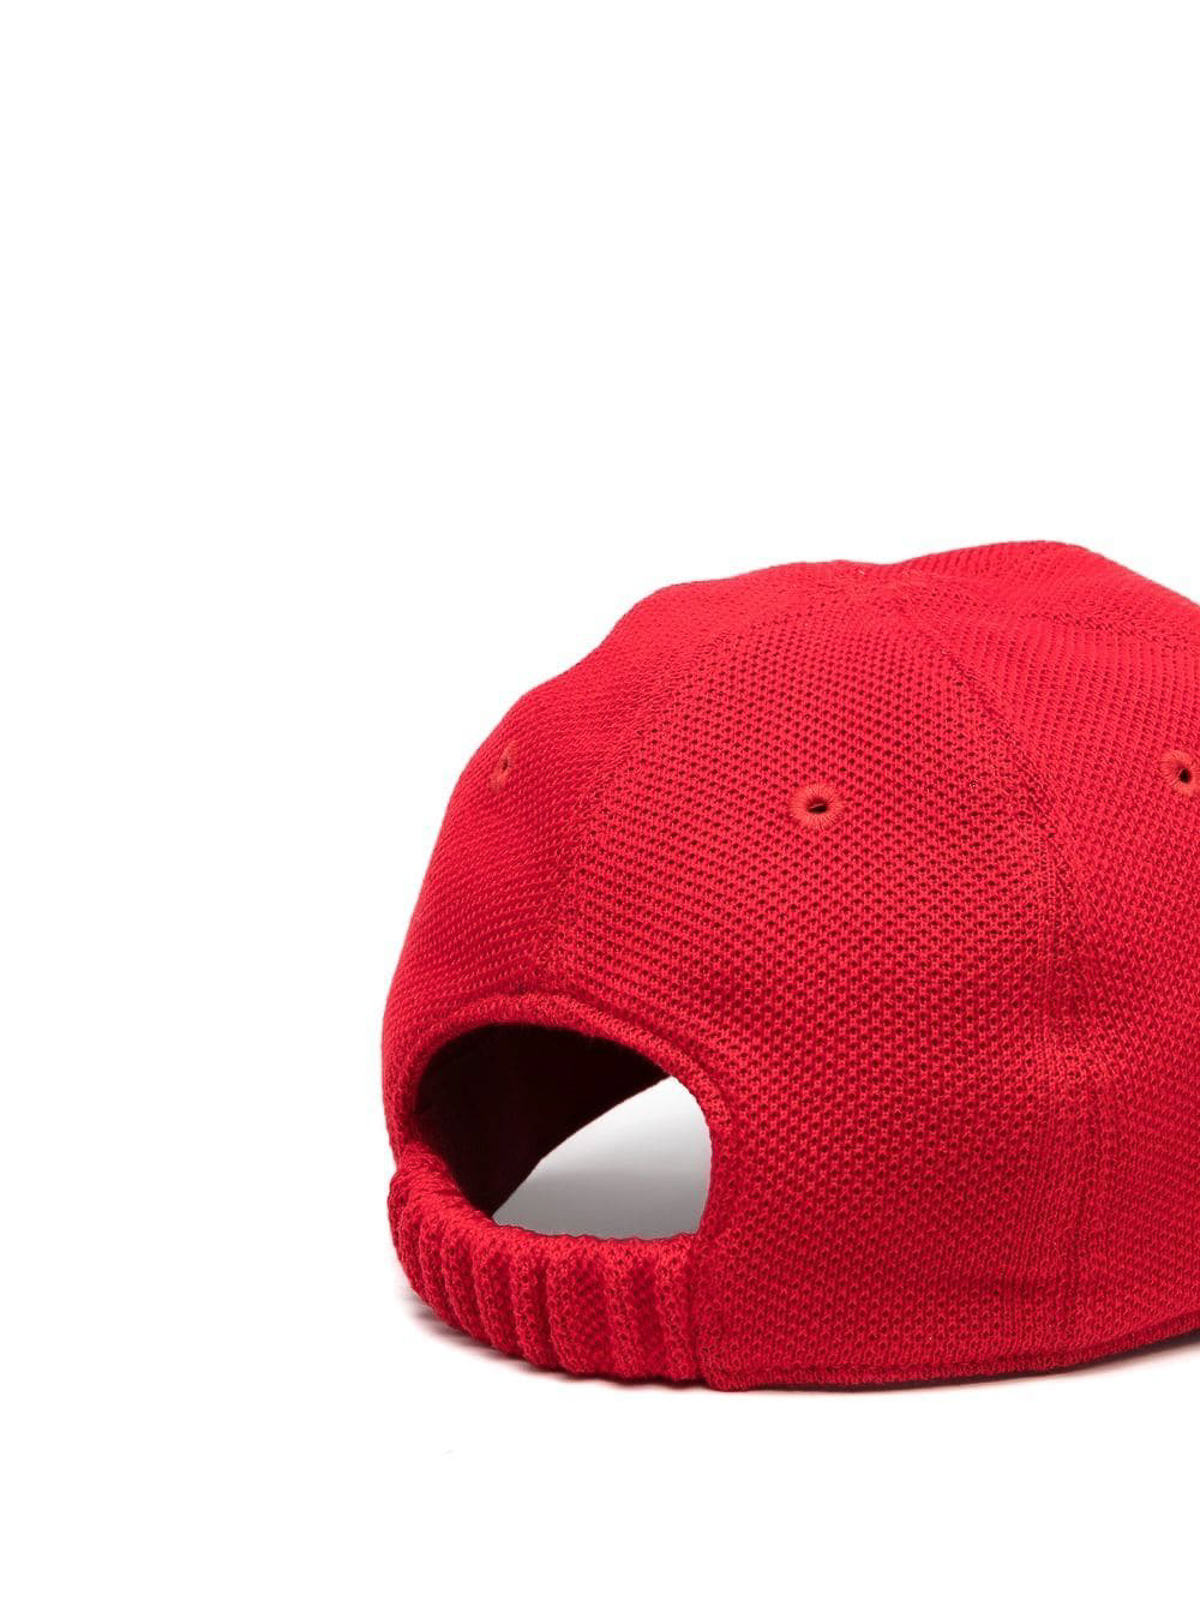 Hats and caps Kiton - Baseball hat